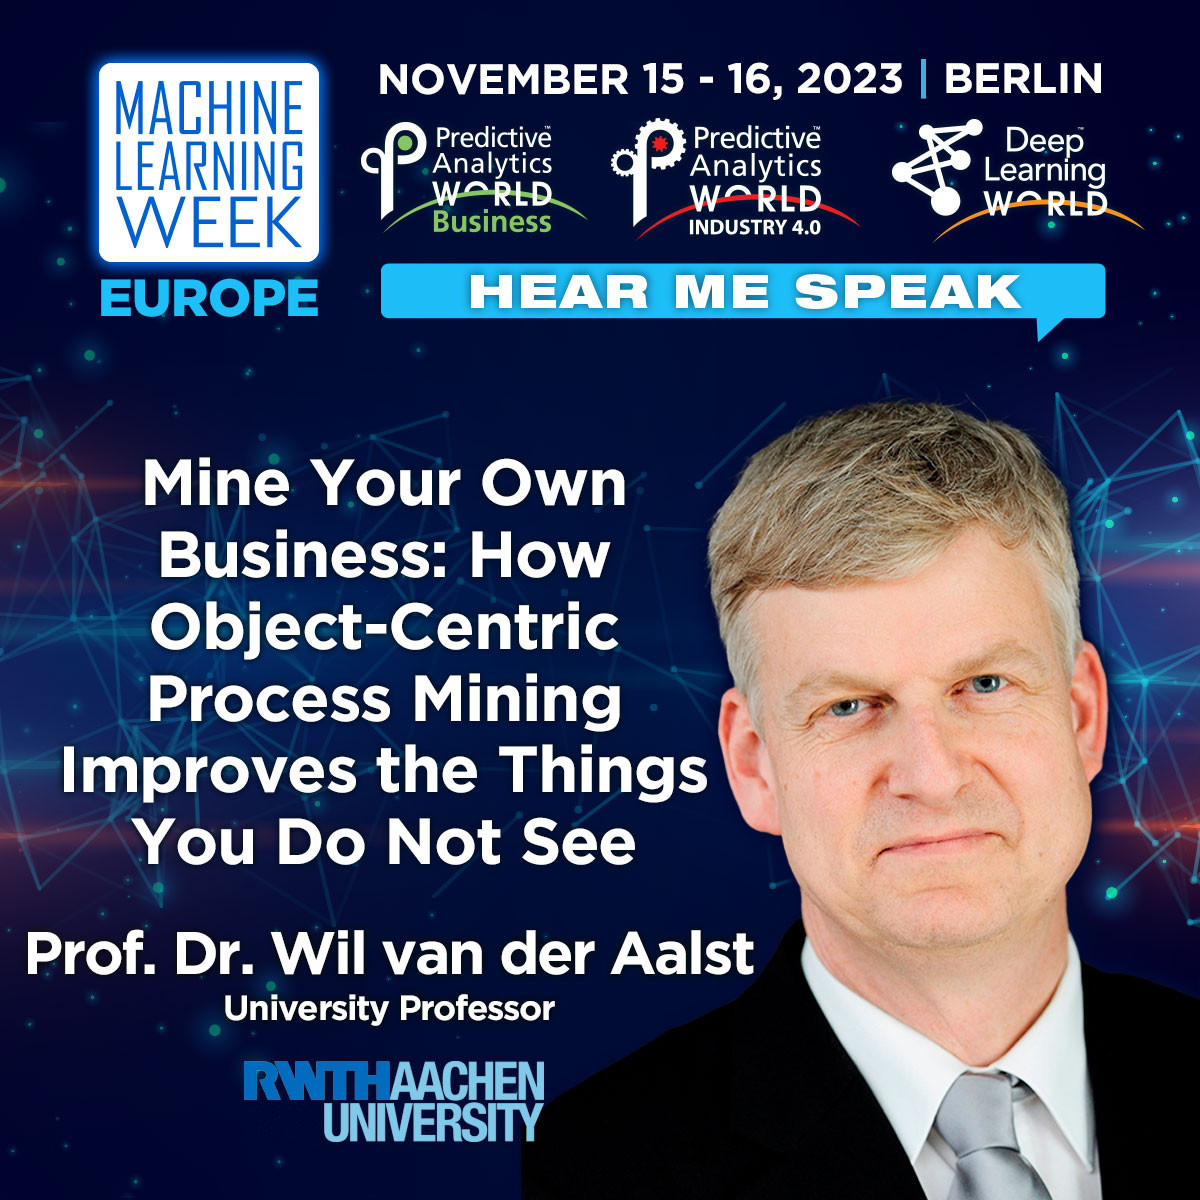 Hear Me Speak at Machine Learning Week Europe #mlweek in #Berlin in November 2023; register via machinelearningweek.eu. #machinelearning #processmining